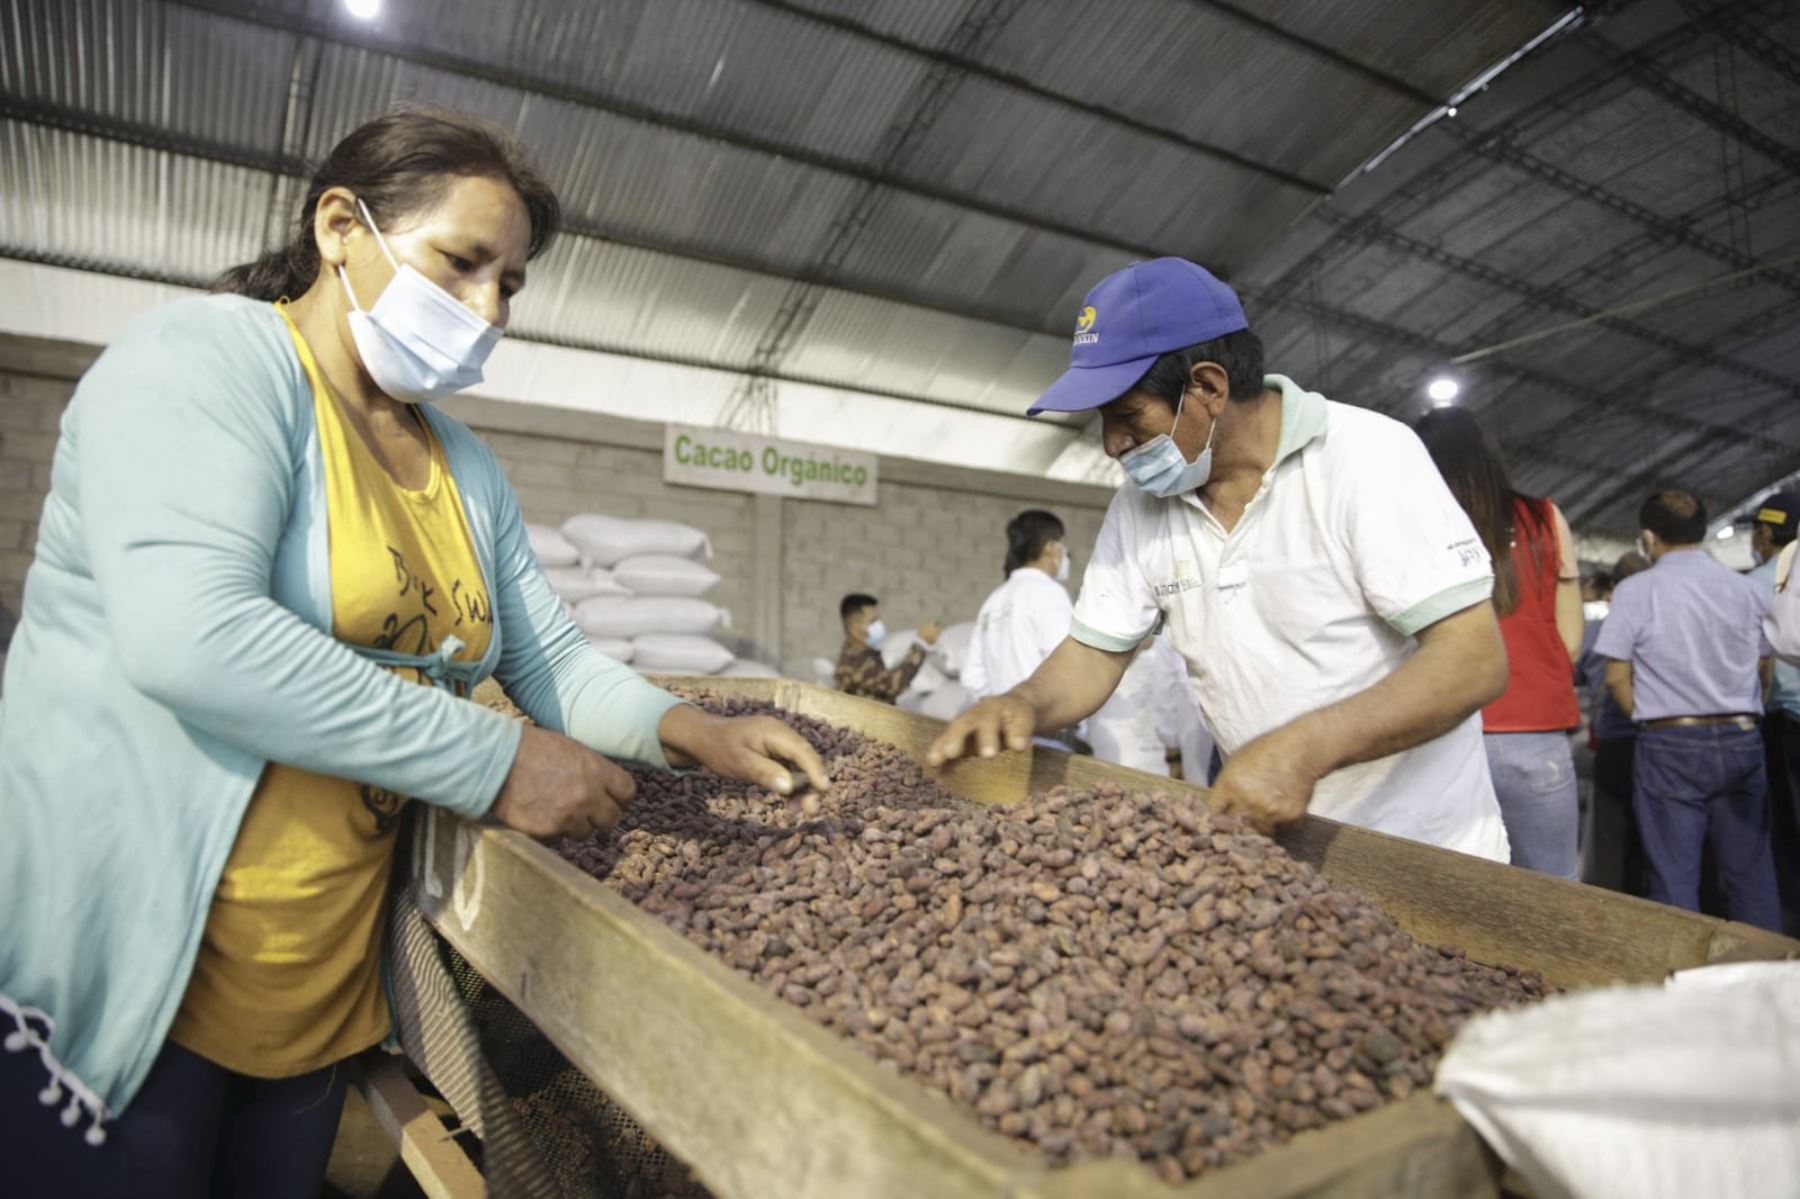 El cacao se ha convertido en el principal producto agrícola de Tocache y los emprendedores de esta provincia apuestan por la elaboración de diversos productos. Foto: ANDINA/difusión.